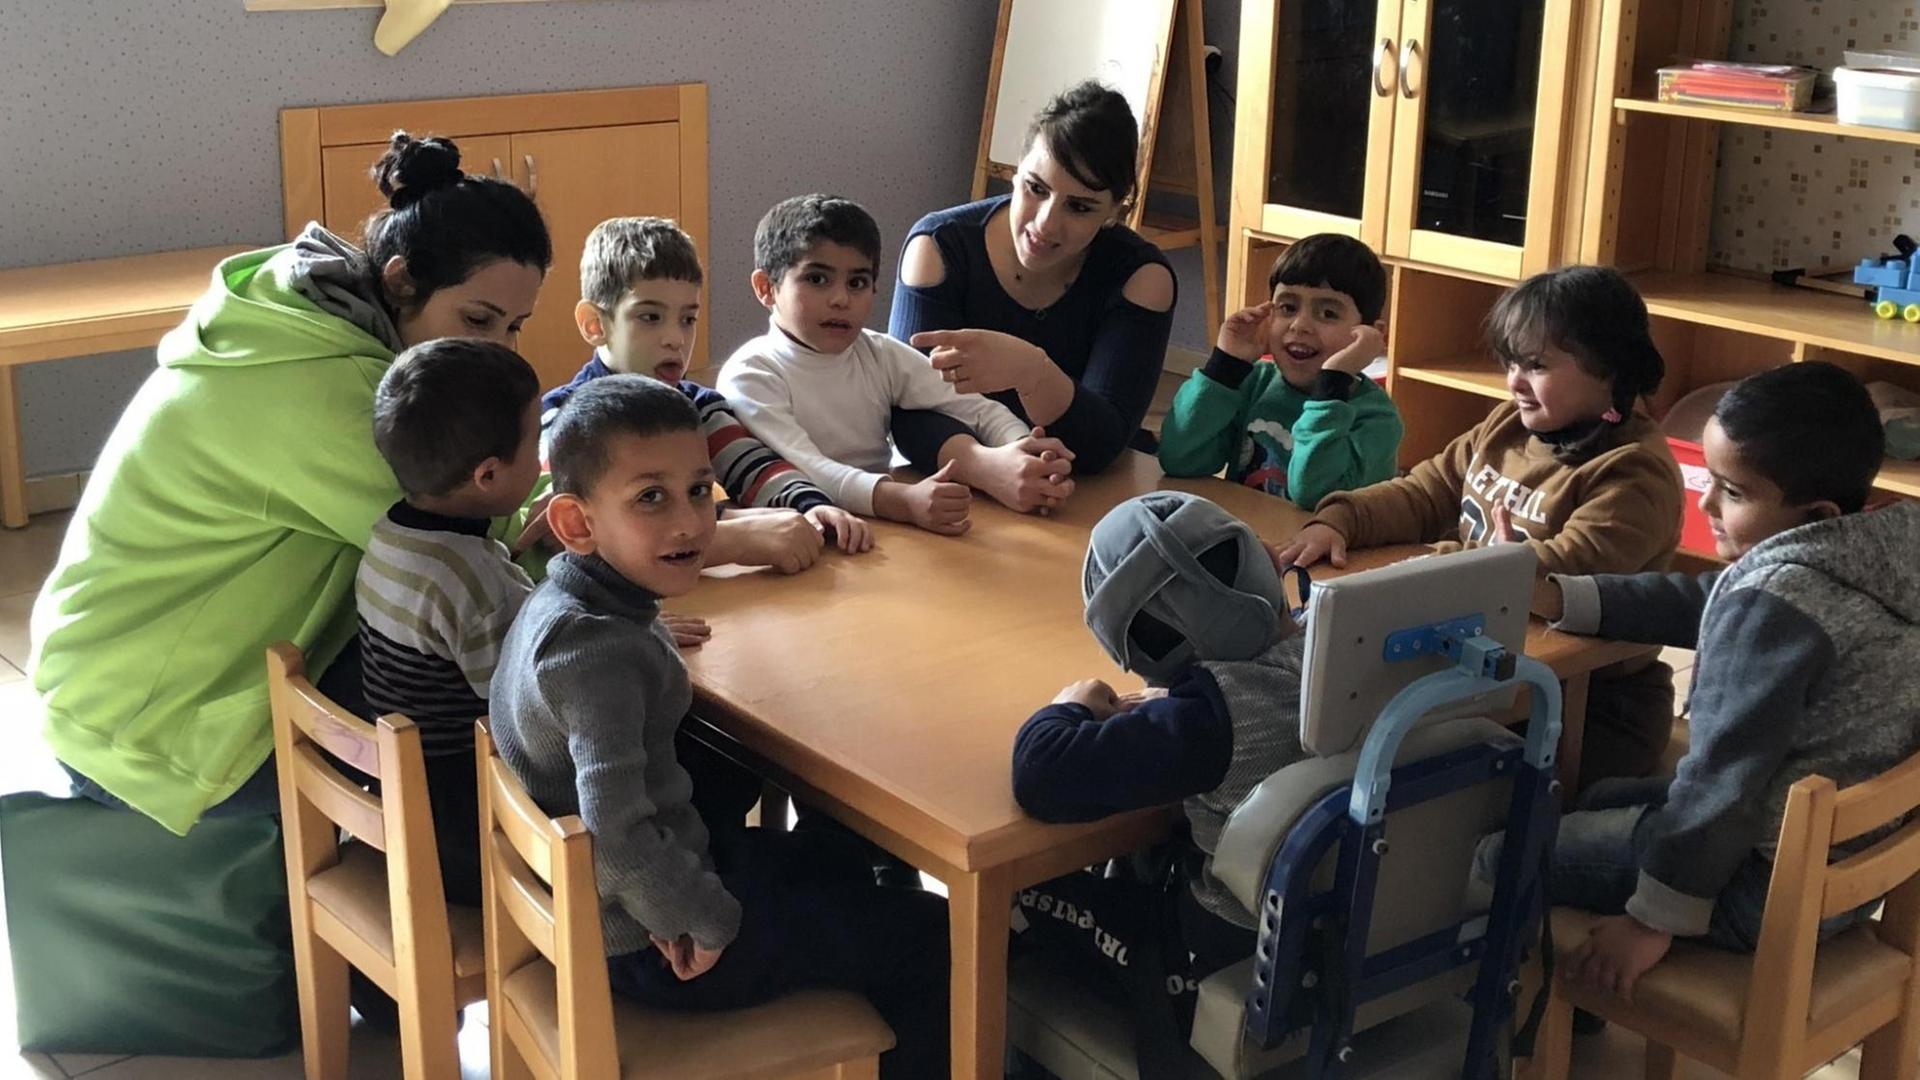 Behinderte, palästinensische Kindern besuchen die Kindergartengruppe des Projekts Lifegate im palästinensischen Westjordanland.